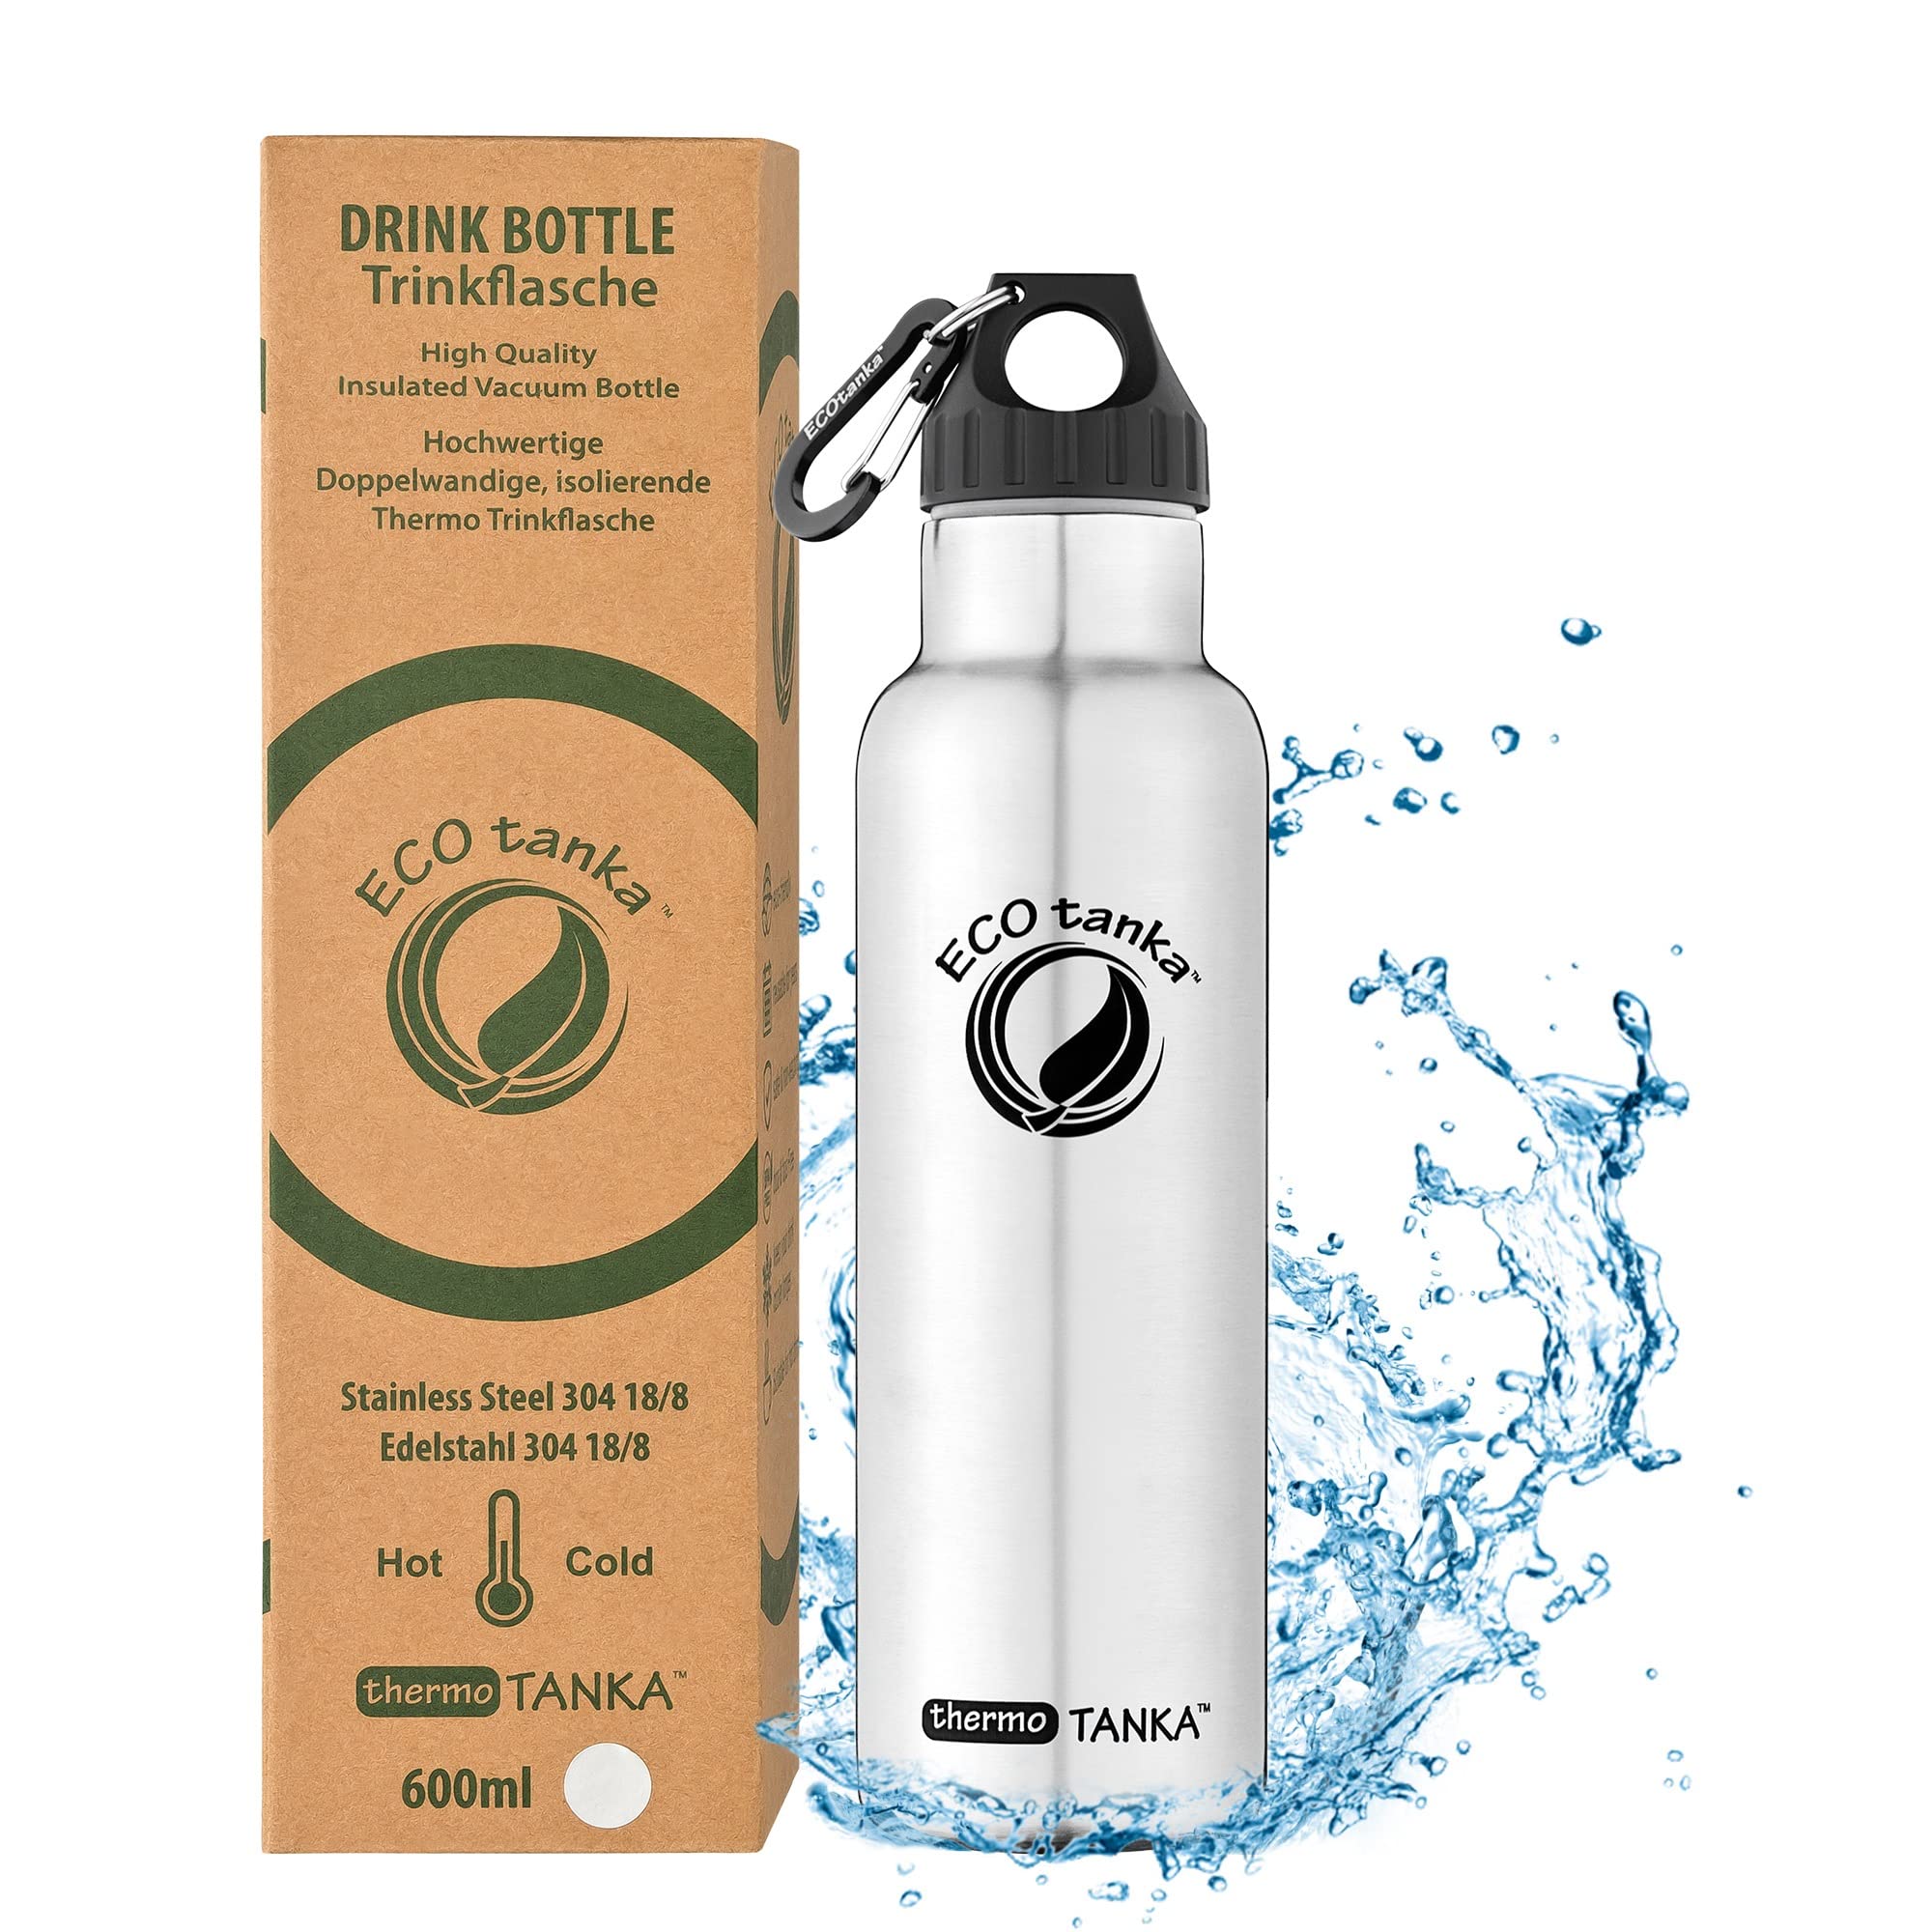 ECOtanka thermoTANKA 800ml (Wave Verschluss) Edelstahl-Thermosflasche, BPA-frei, ökologisch, nachhaltig, robust, sehr leicht